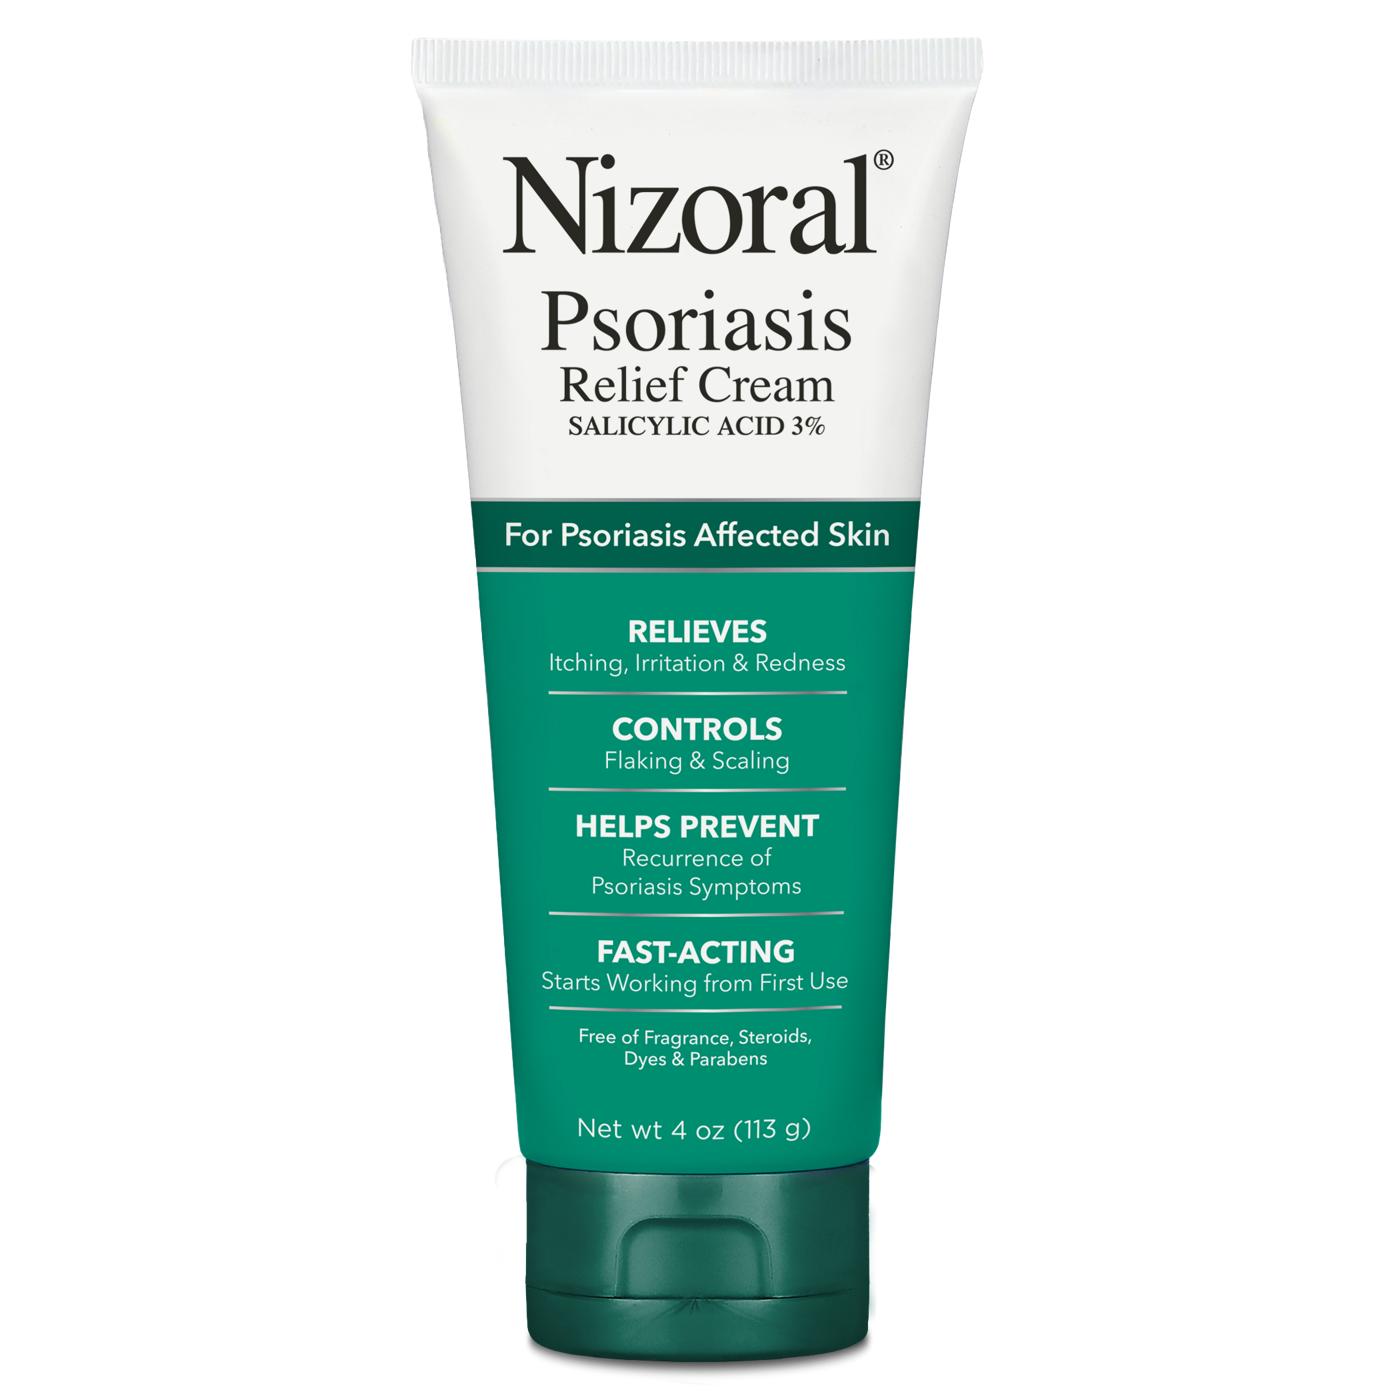 Nizoral Psoriasis Relief Cream; image 2 of 3